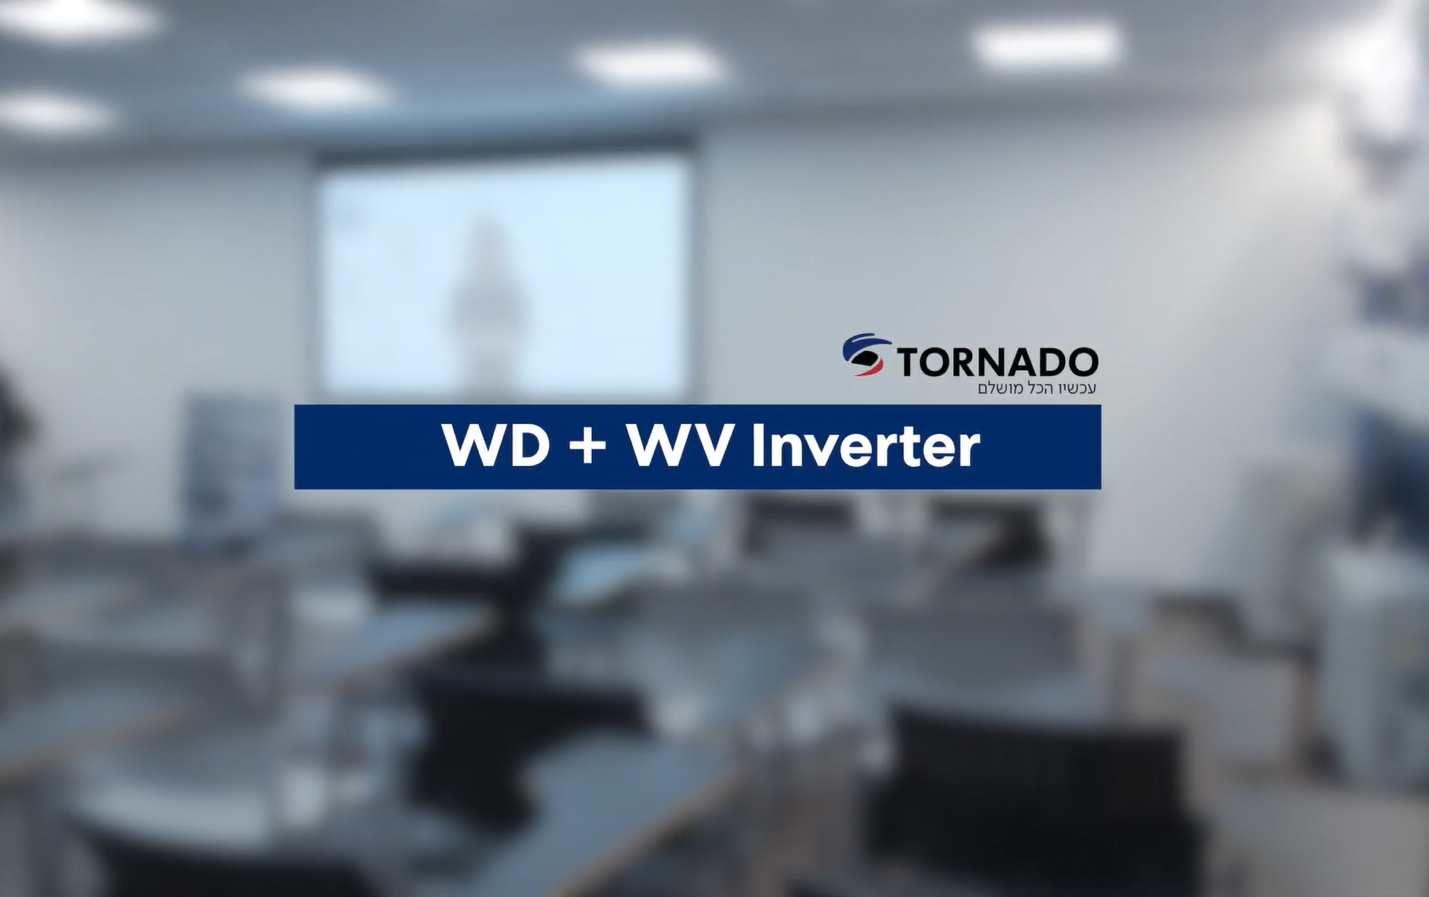 מצגת טיפים בנושא התקנת מזגן WD + WV INVERTER